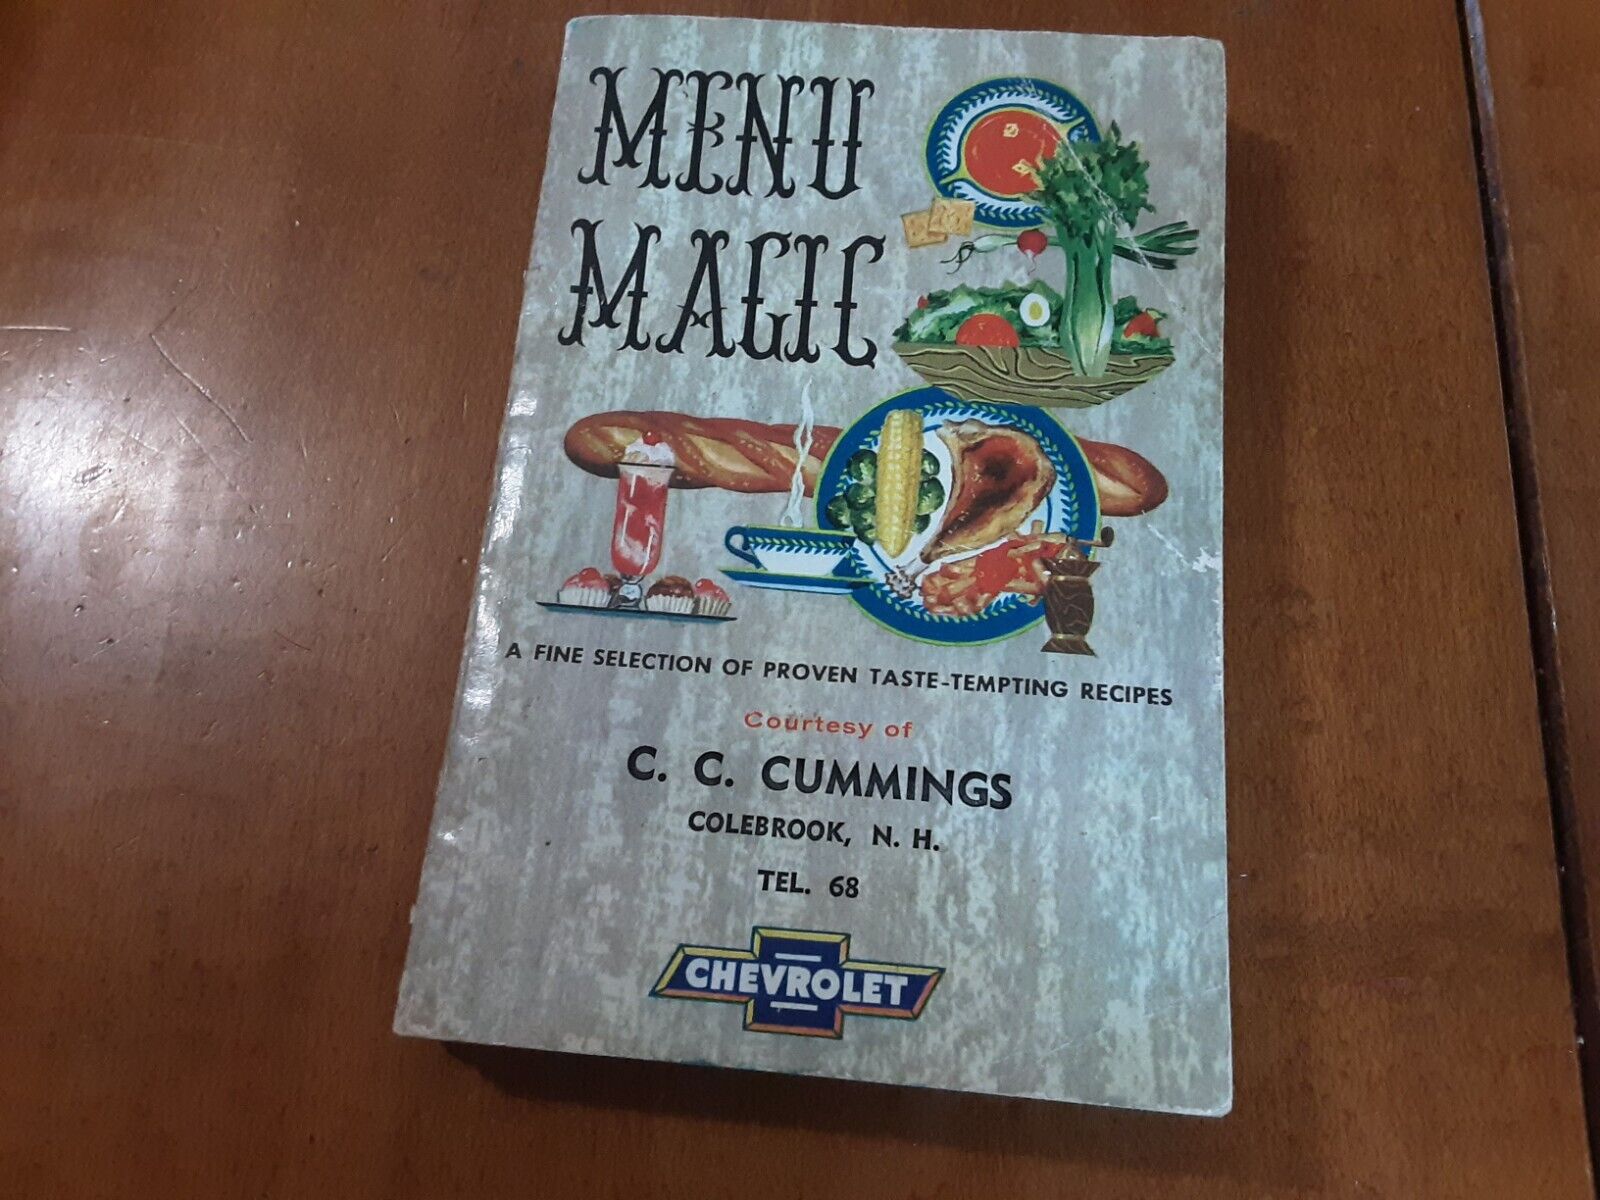 1956 MENU MAGIC RECIPE BOOK C.C. CUMMINGS CHEVROLET COLEBROOK NH GMC TEL. 68